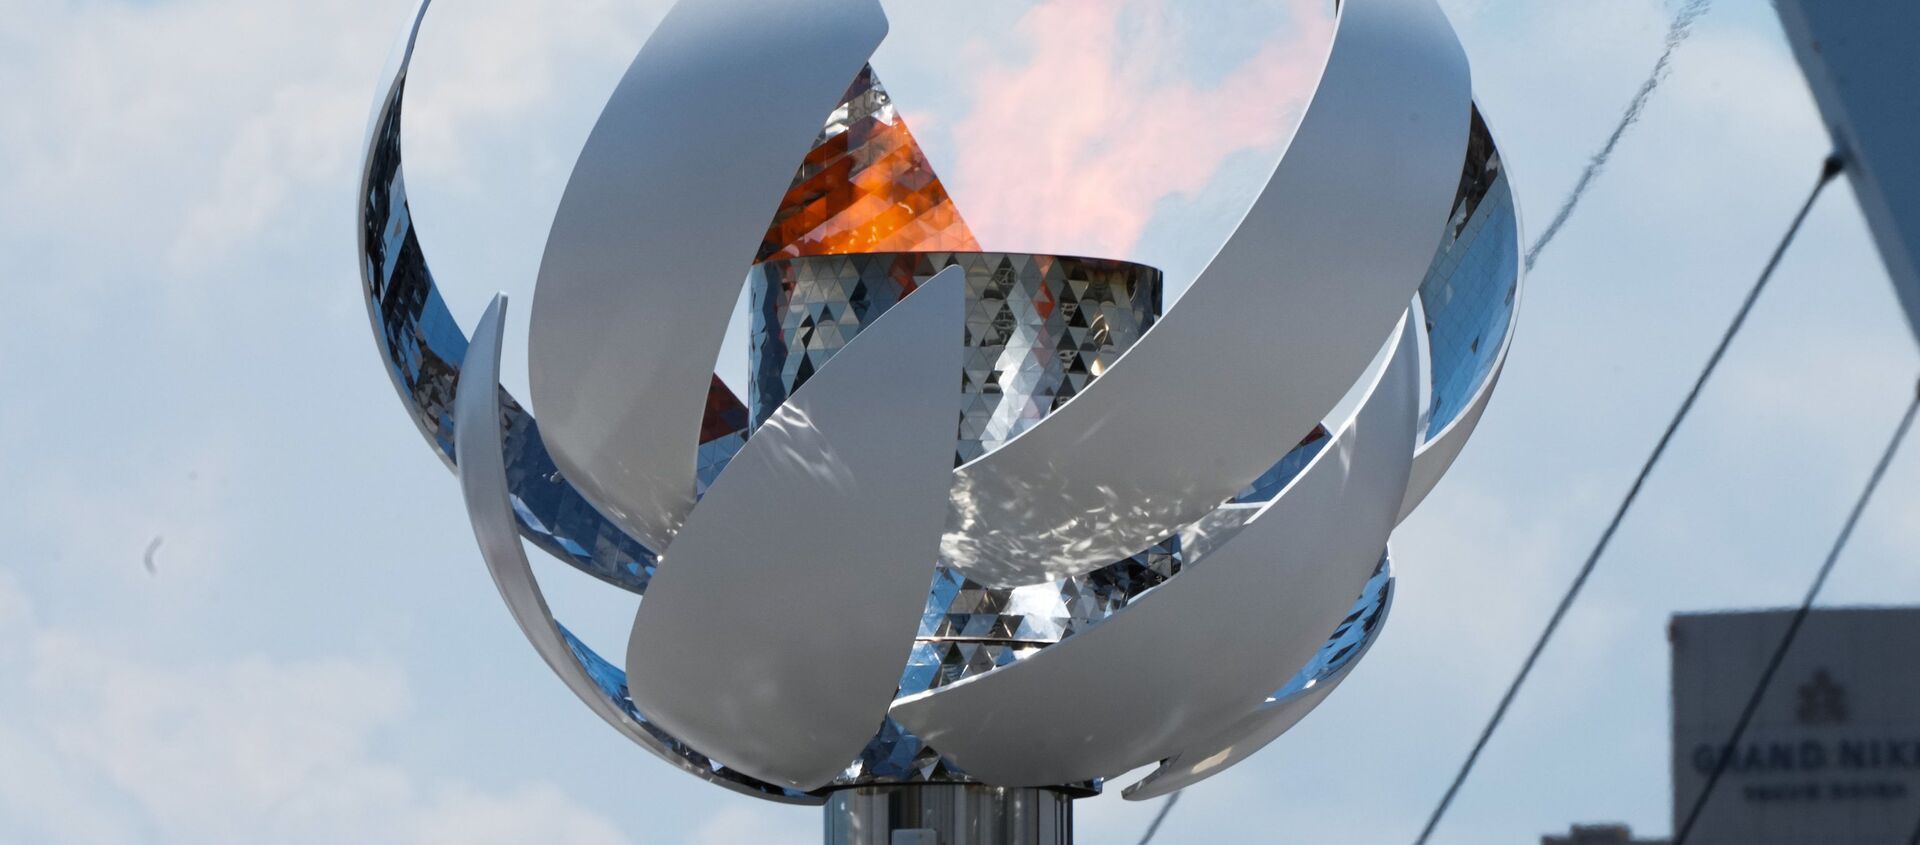 Олимпийский огонь в чаше на набережной Ариакэ в Токио - Sputnik Грузия, 1920, 02.08.2021